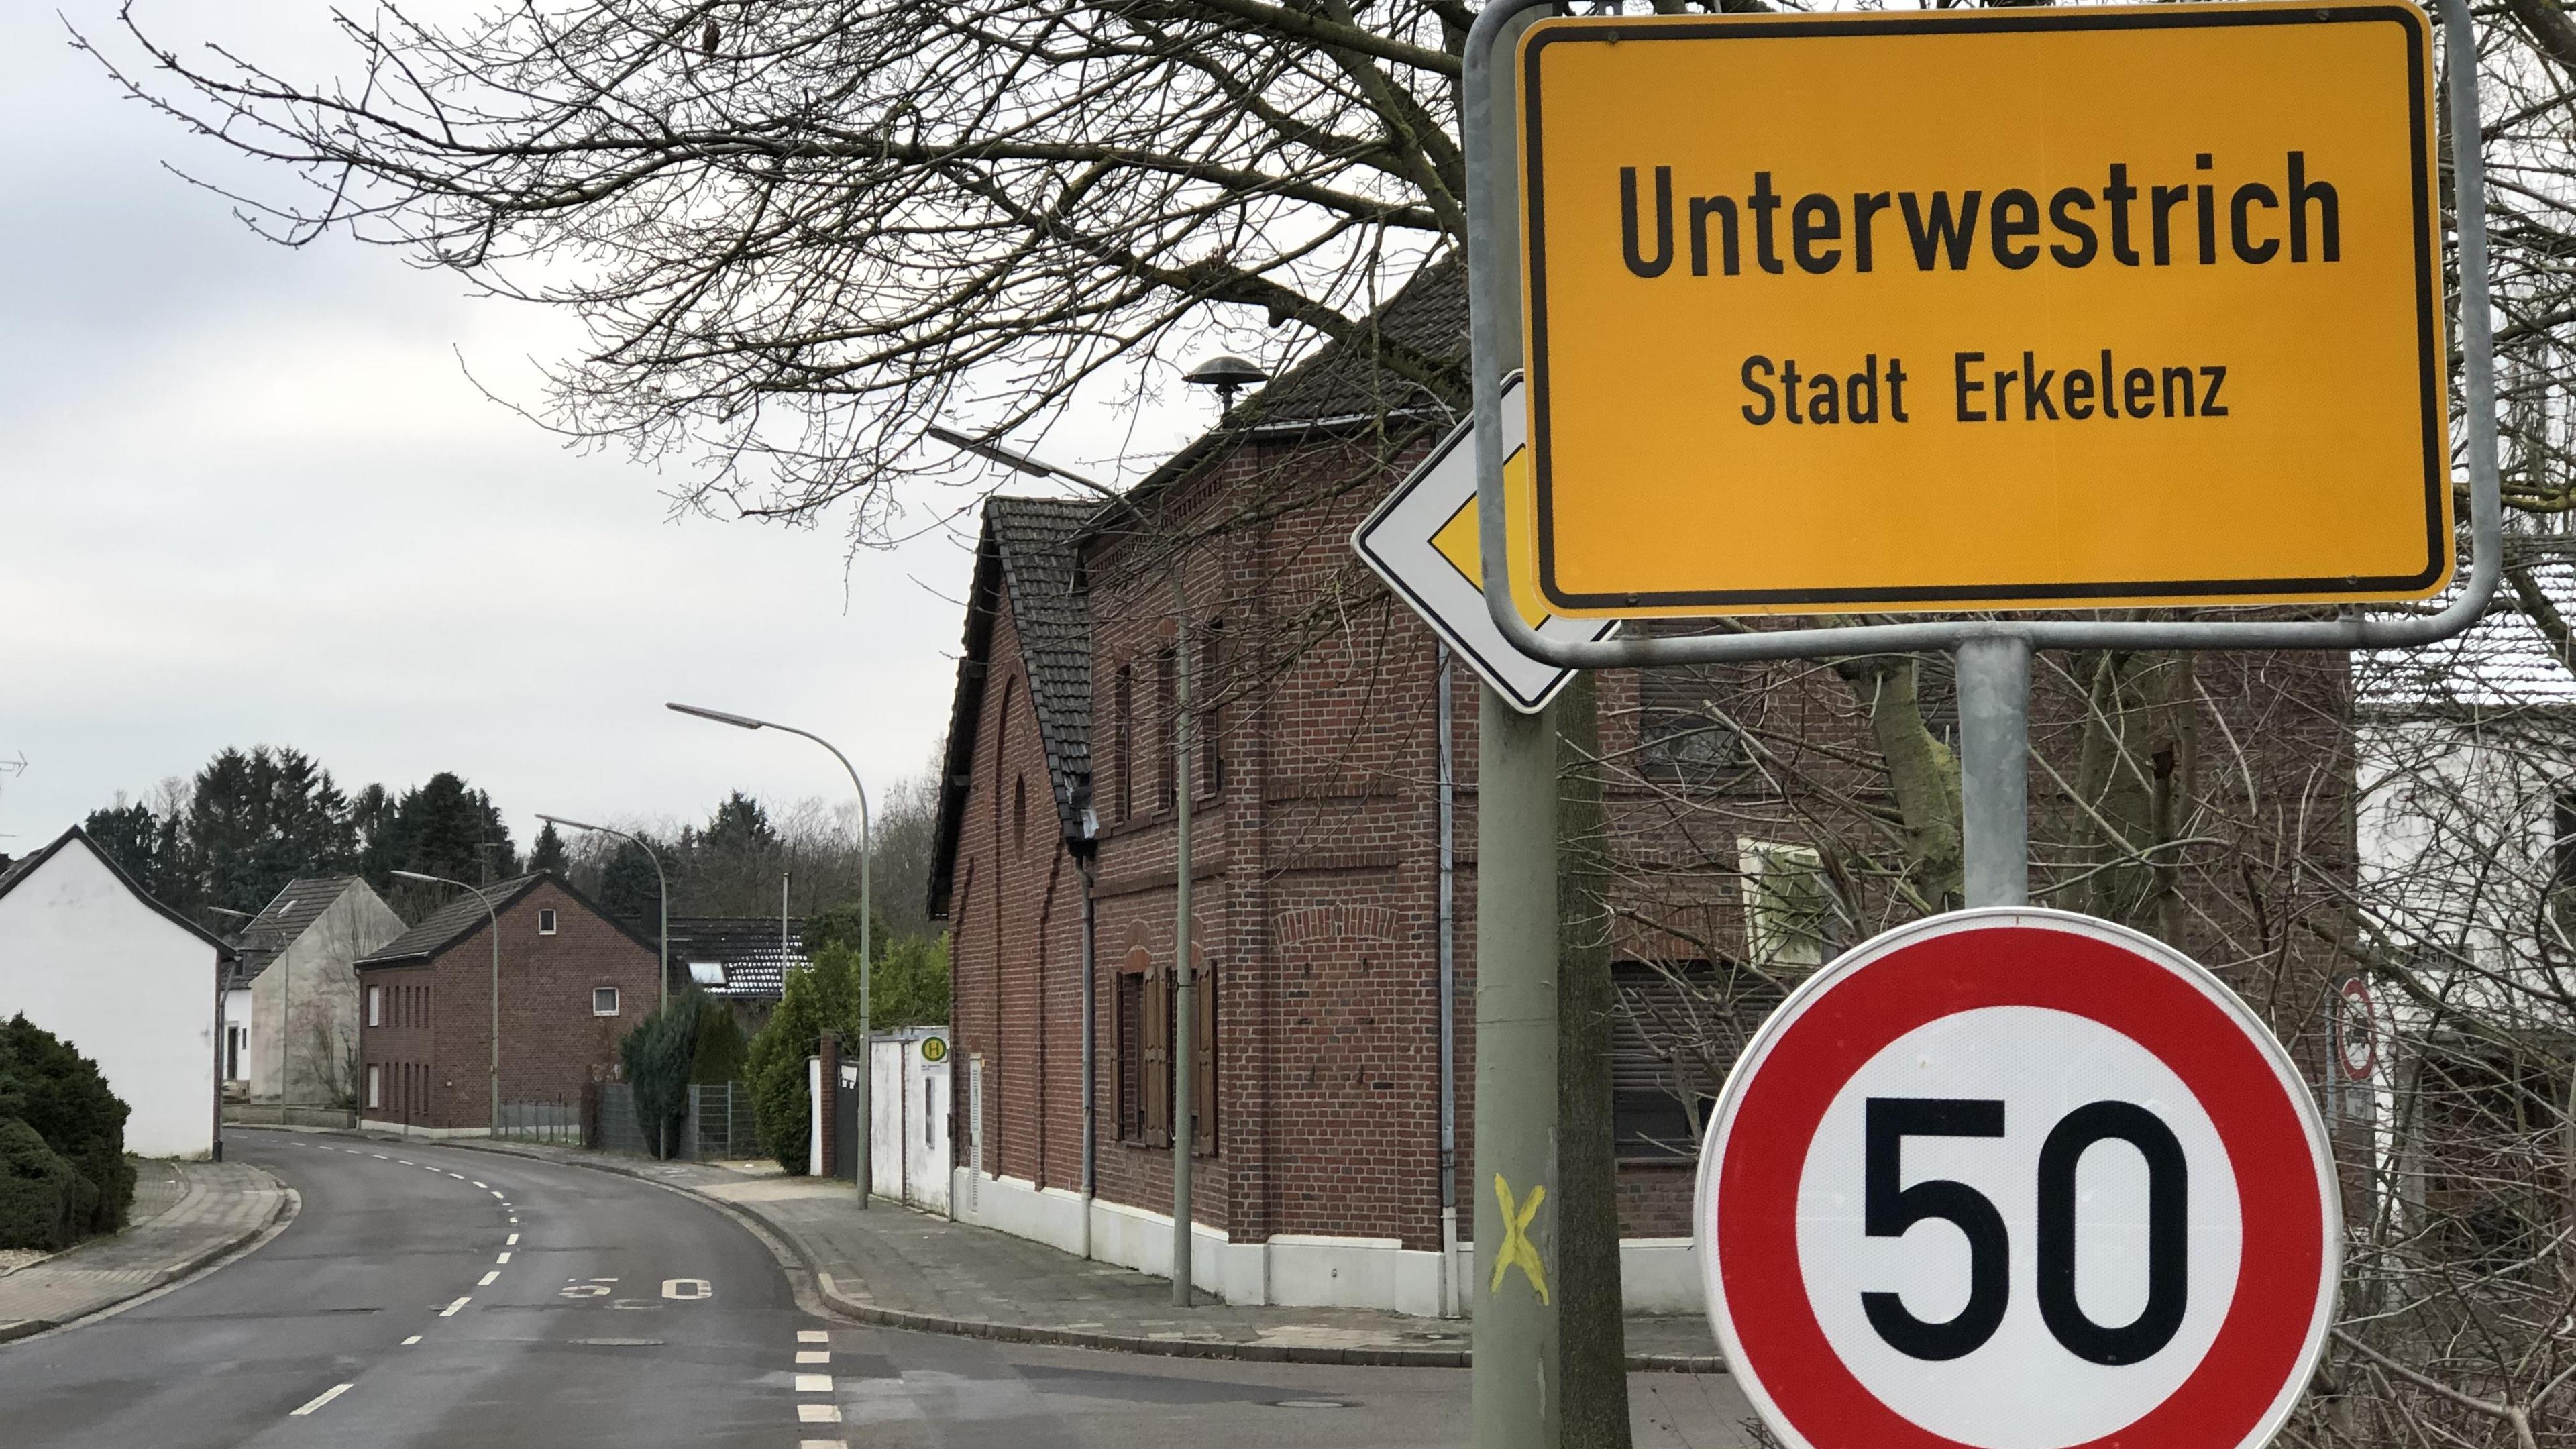 Die früheren Hausbesitzer der Dörfer Keyenberg, Kuckum, Unter- und Oberwestrich sowie Berverath können nun ihren einstigen Besitz zurückkaufen.